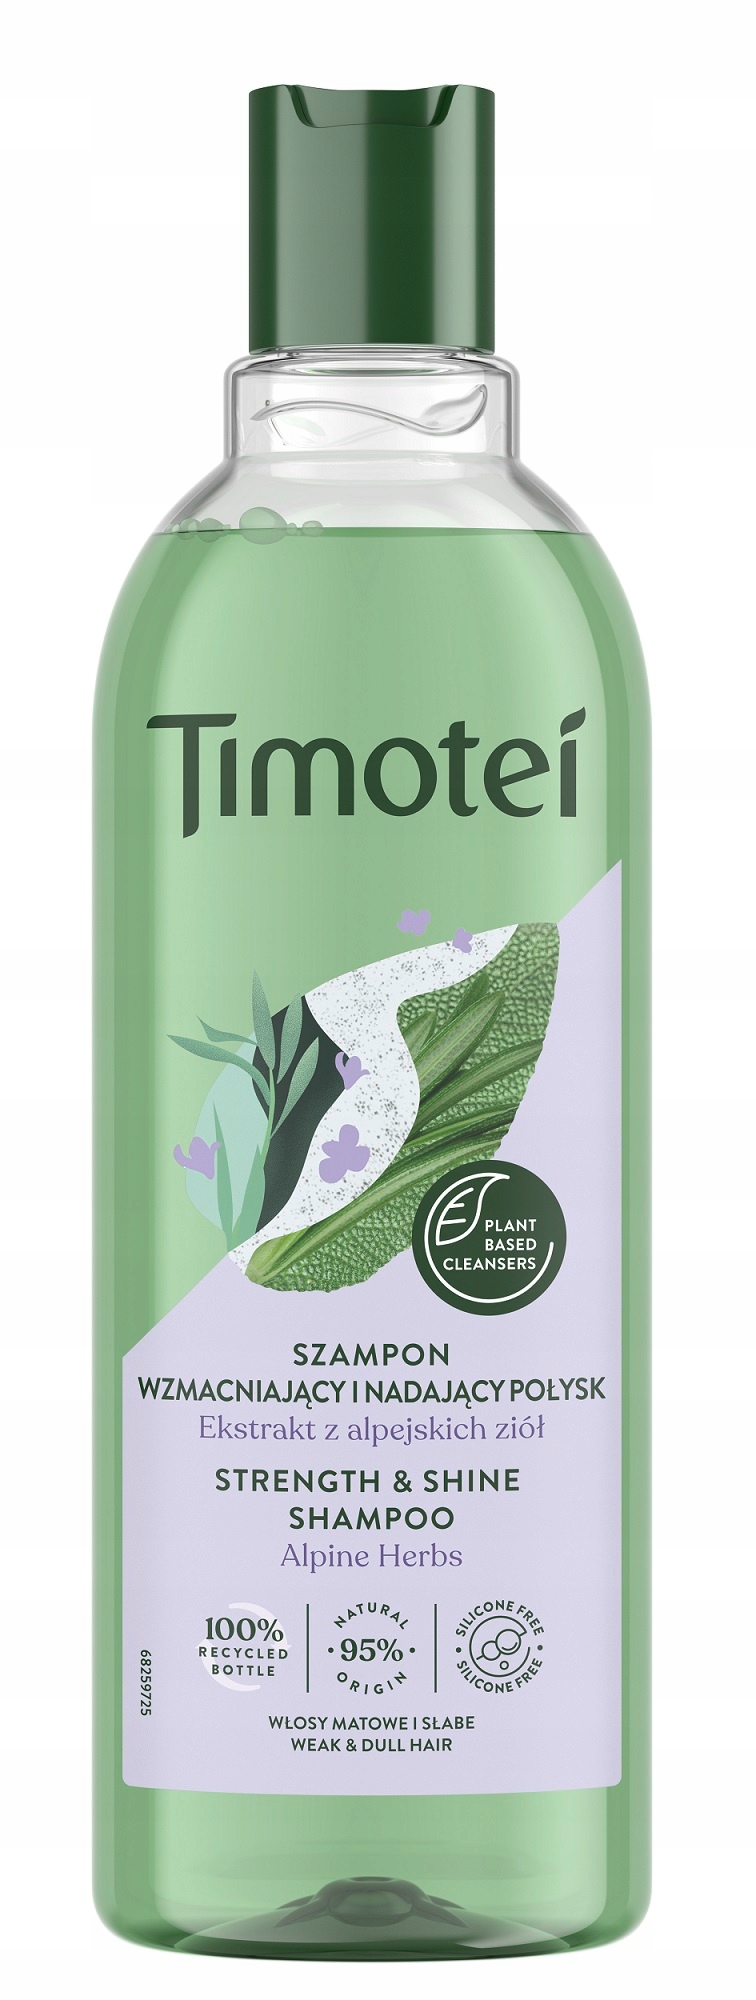 timotei szampon ktory najlepszy